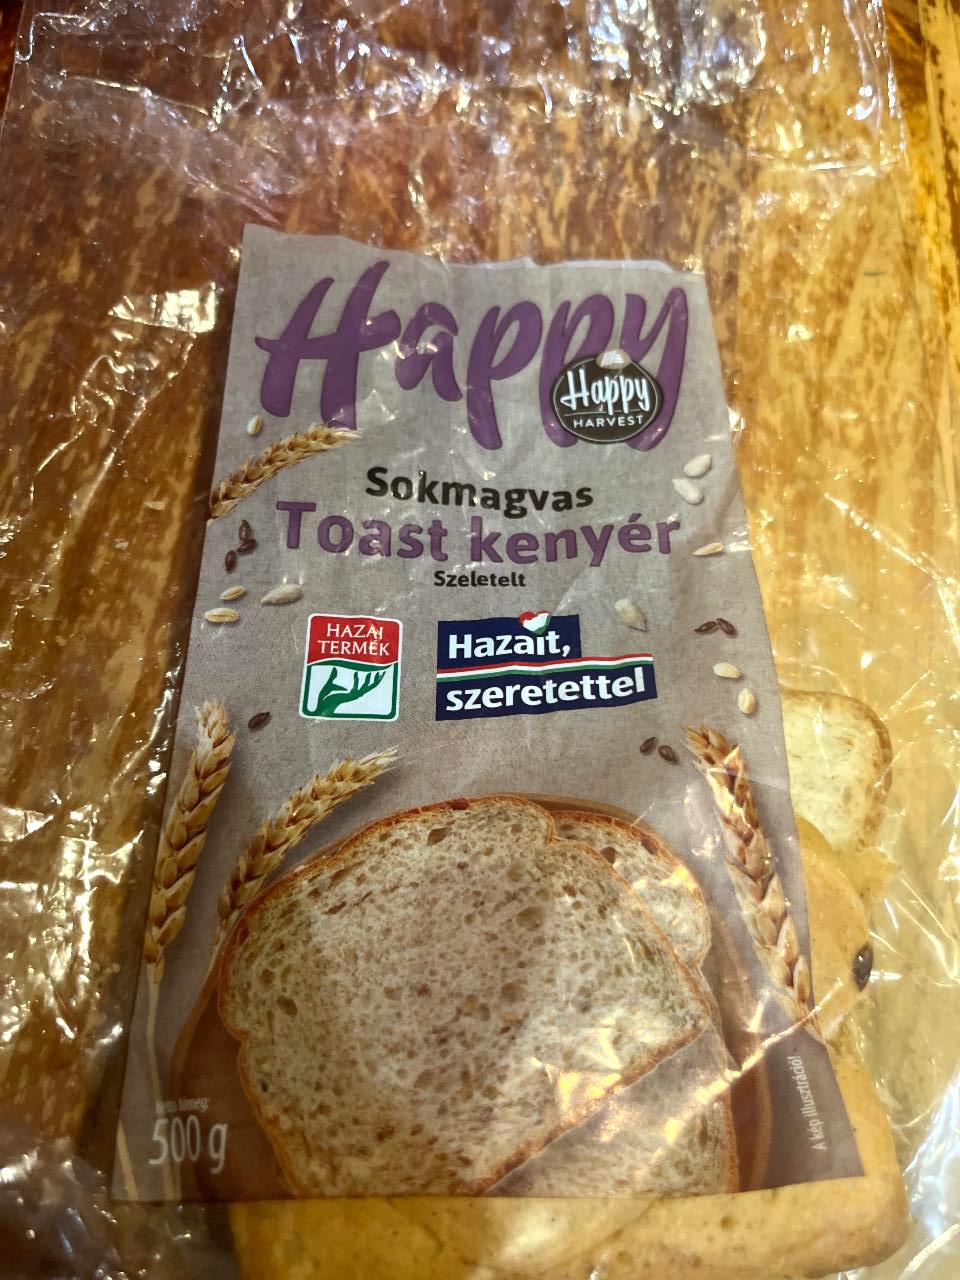 Képek - Sokmagvas toast kenyér Happy Harvest